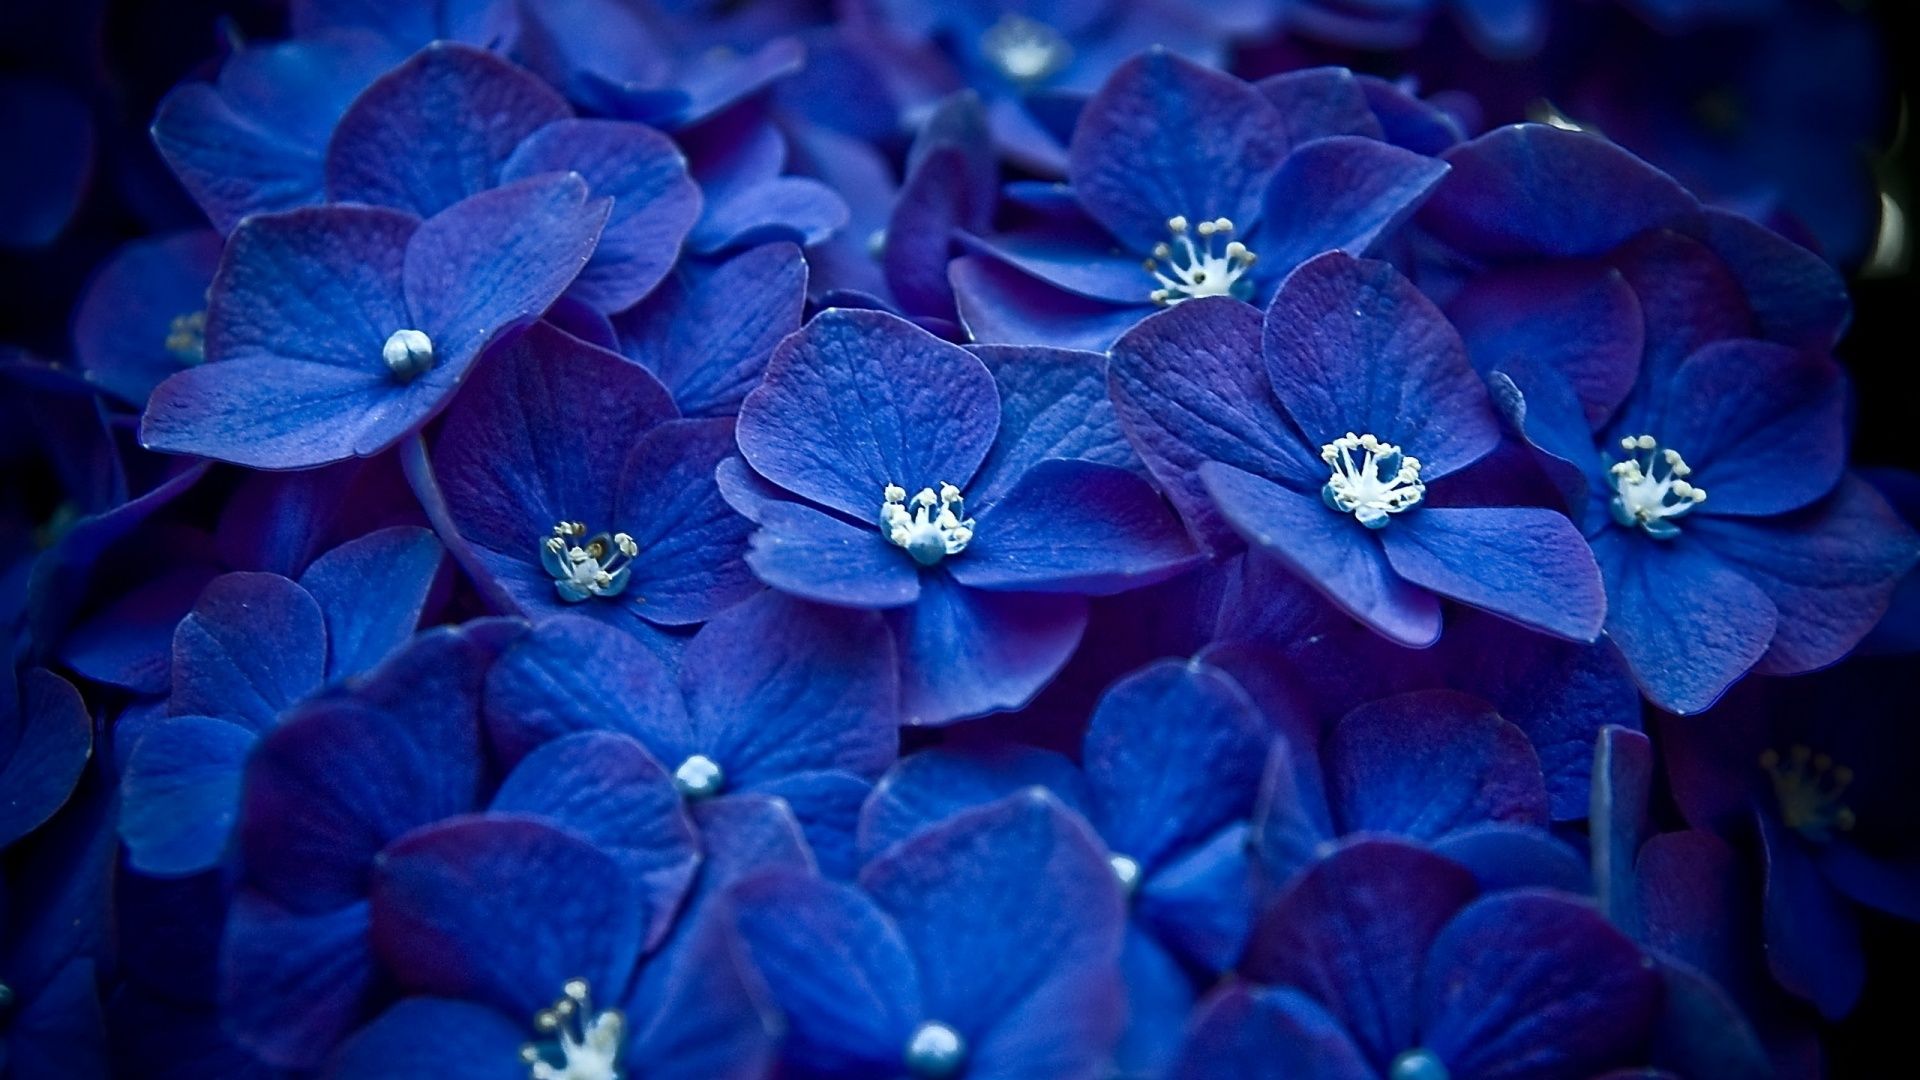 Blue Flower Wallpaper Tumblr Hq. wallpaperwide